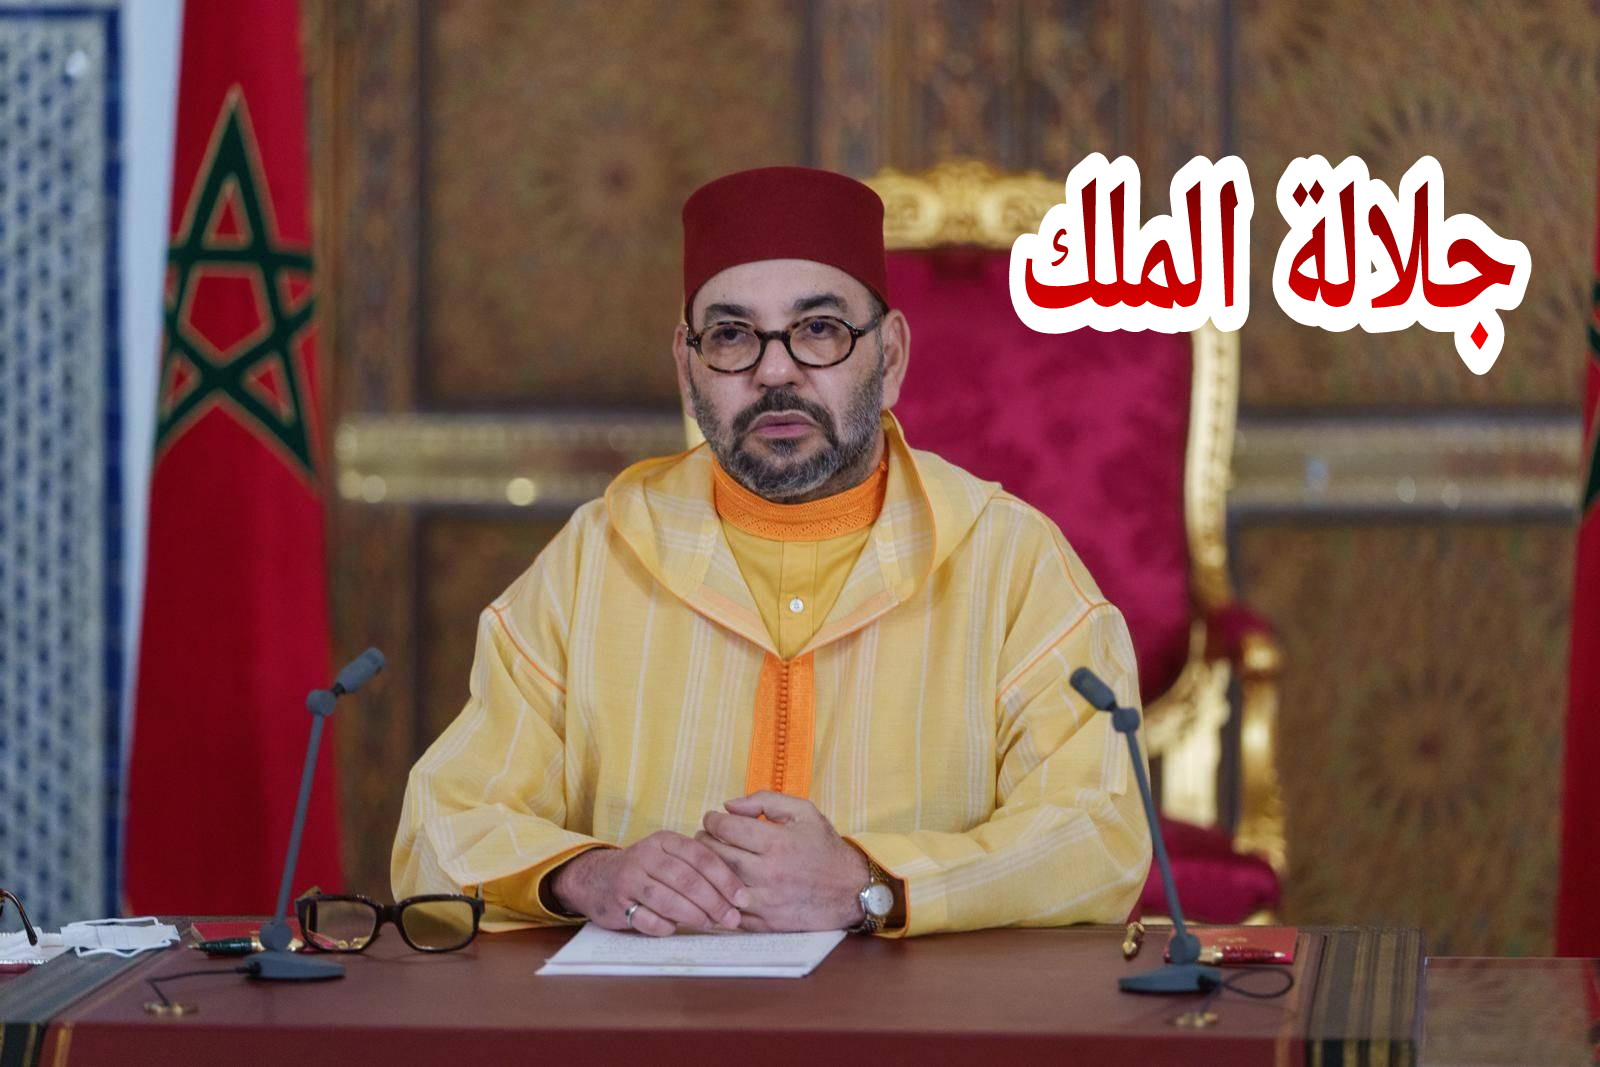 جلالة الملك محمد السادس يتبادل التهاني مع قادة دول عربية وعالمية بمناسبة رأس السنة